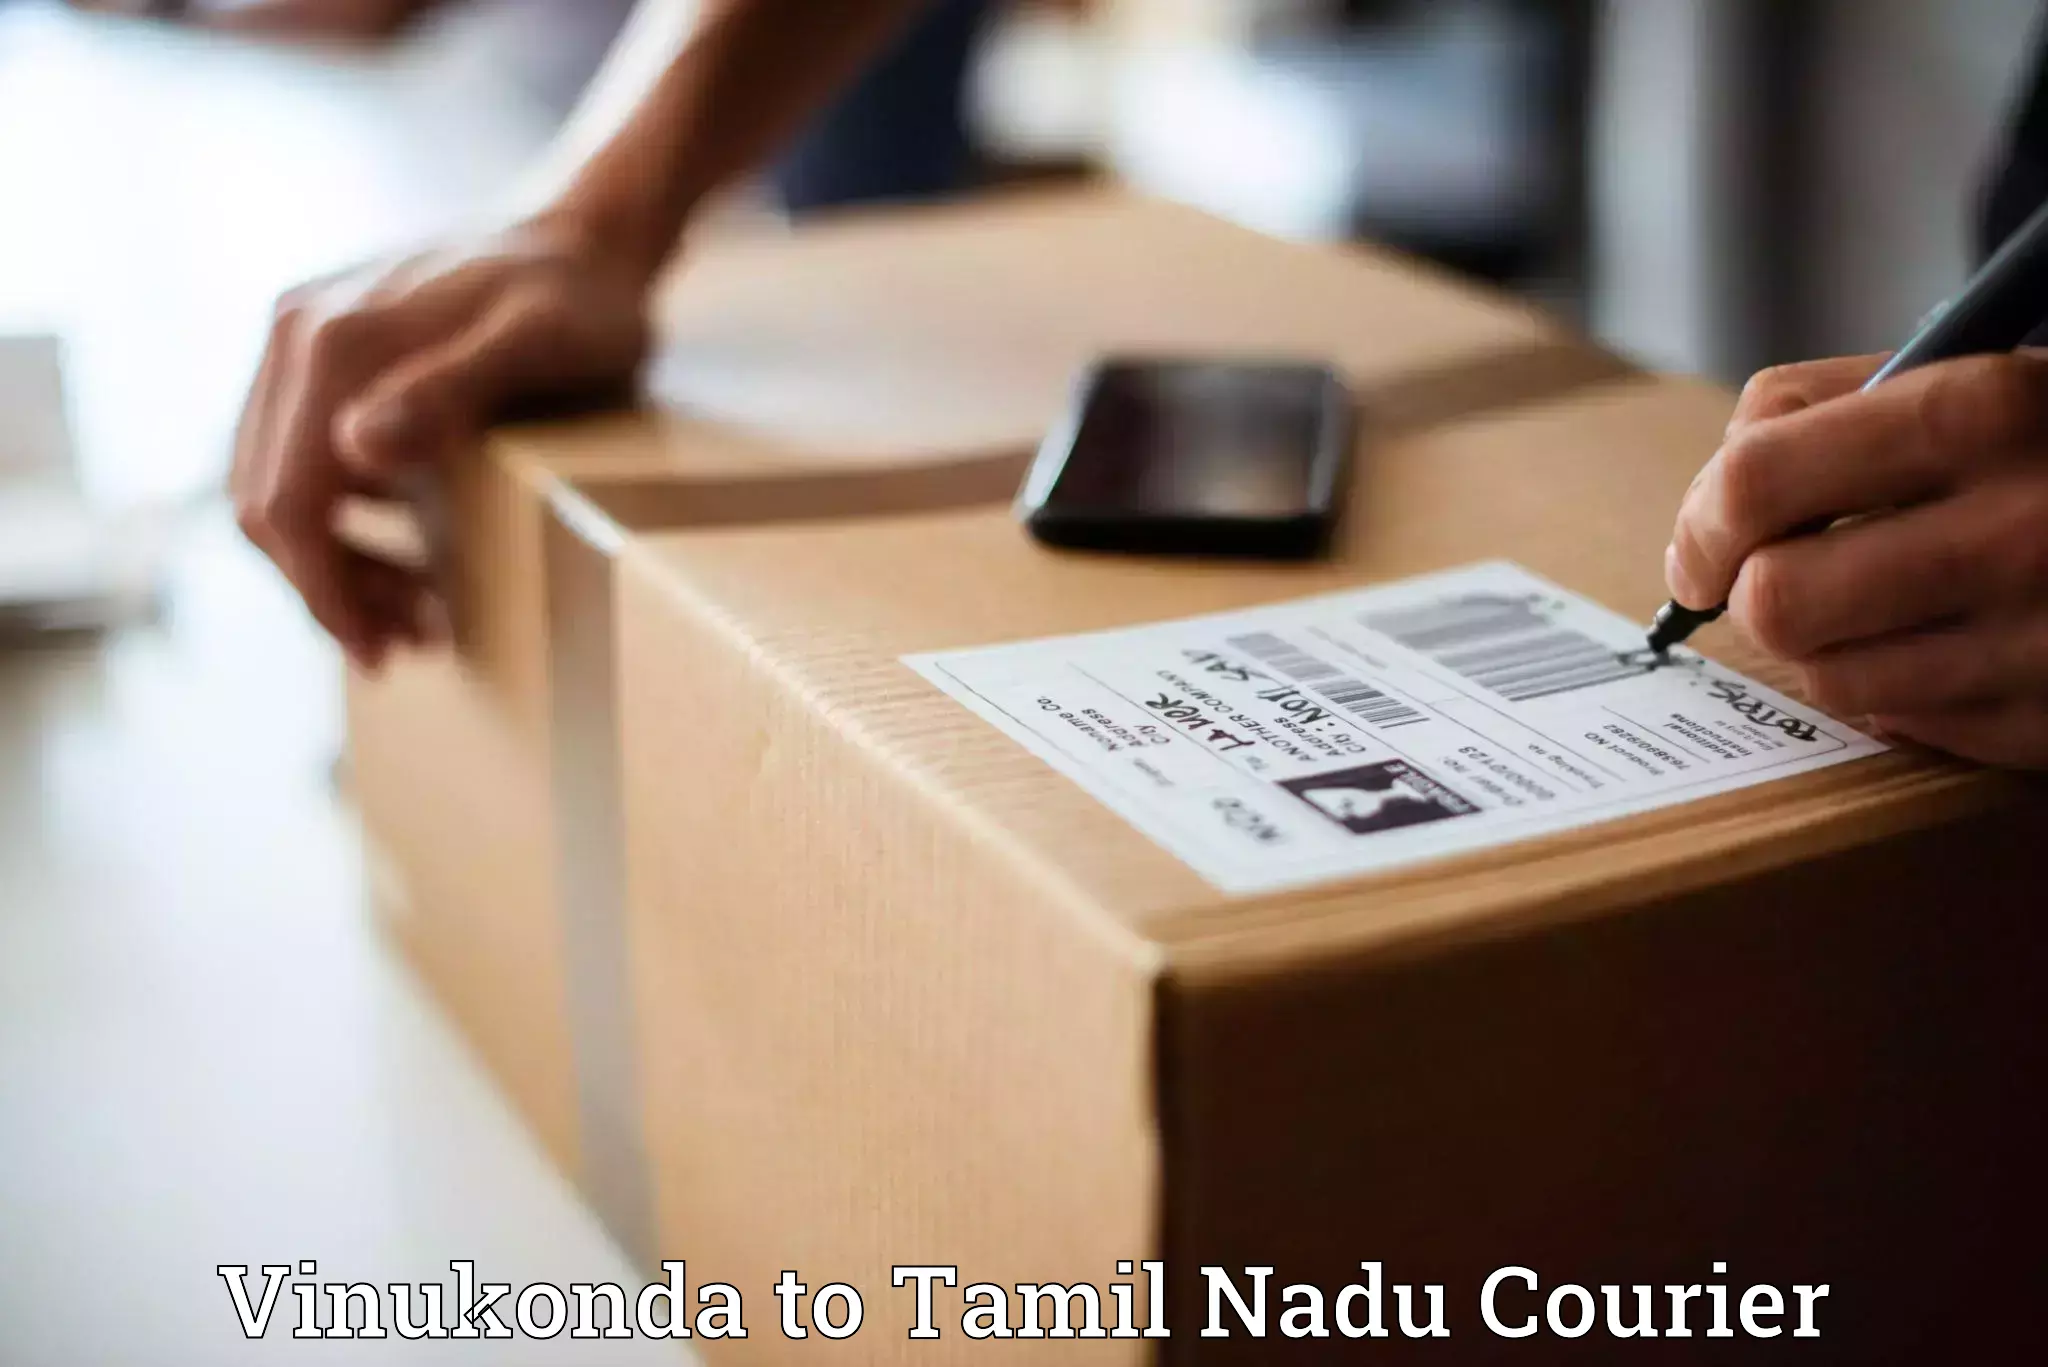 Efficient parcel service Vinukonda to The Gandhigram Rural Institute